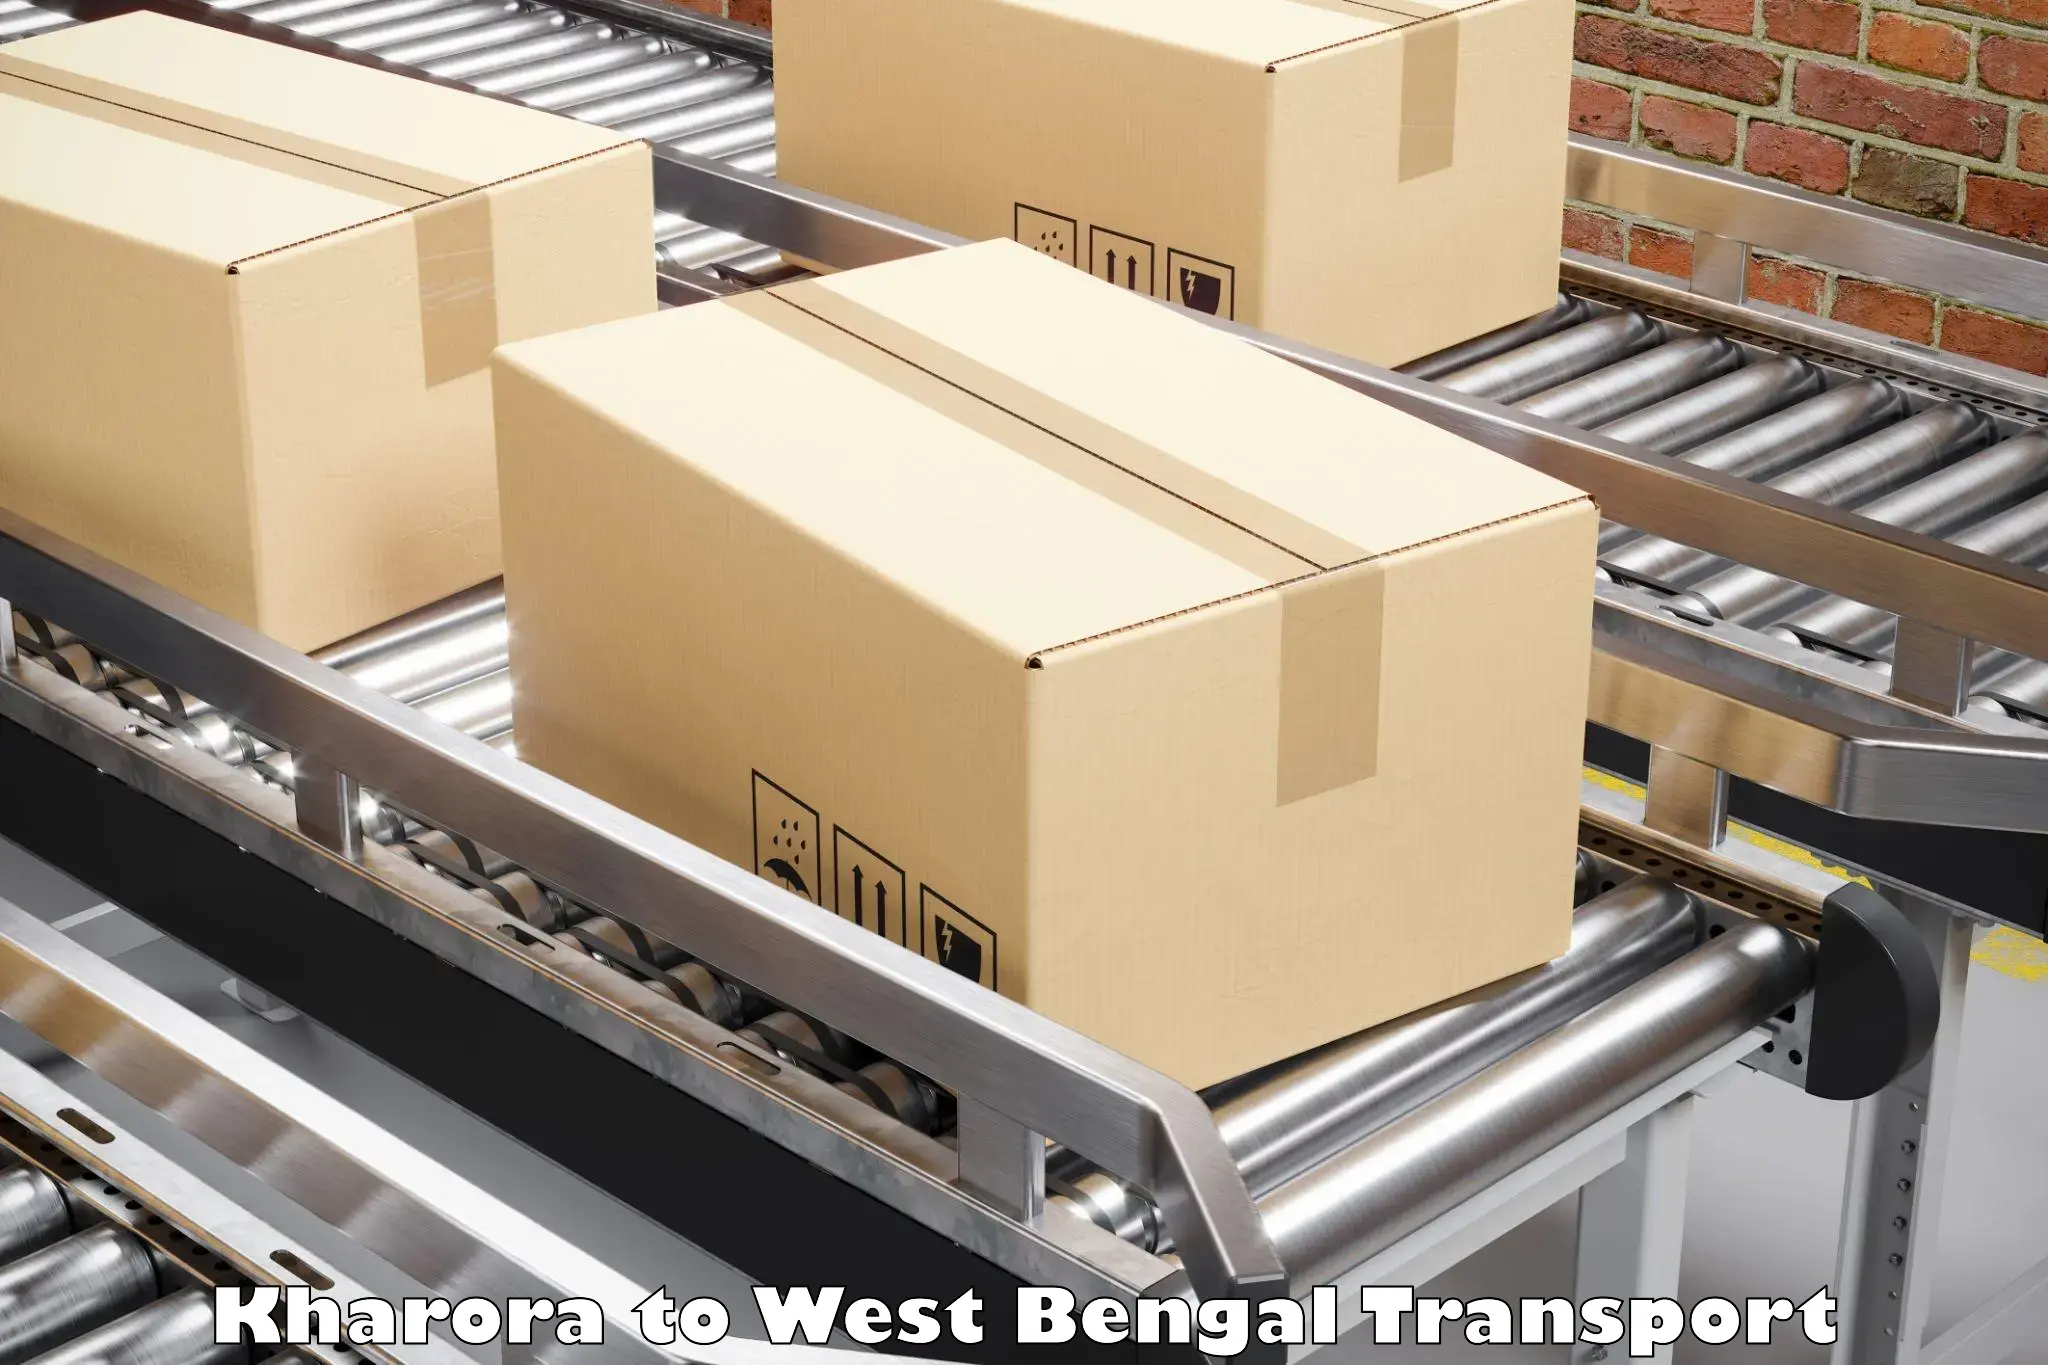 Luggage transport services Kharora to Kumargram